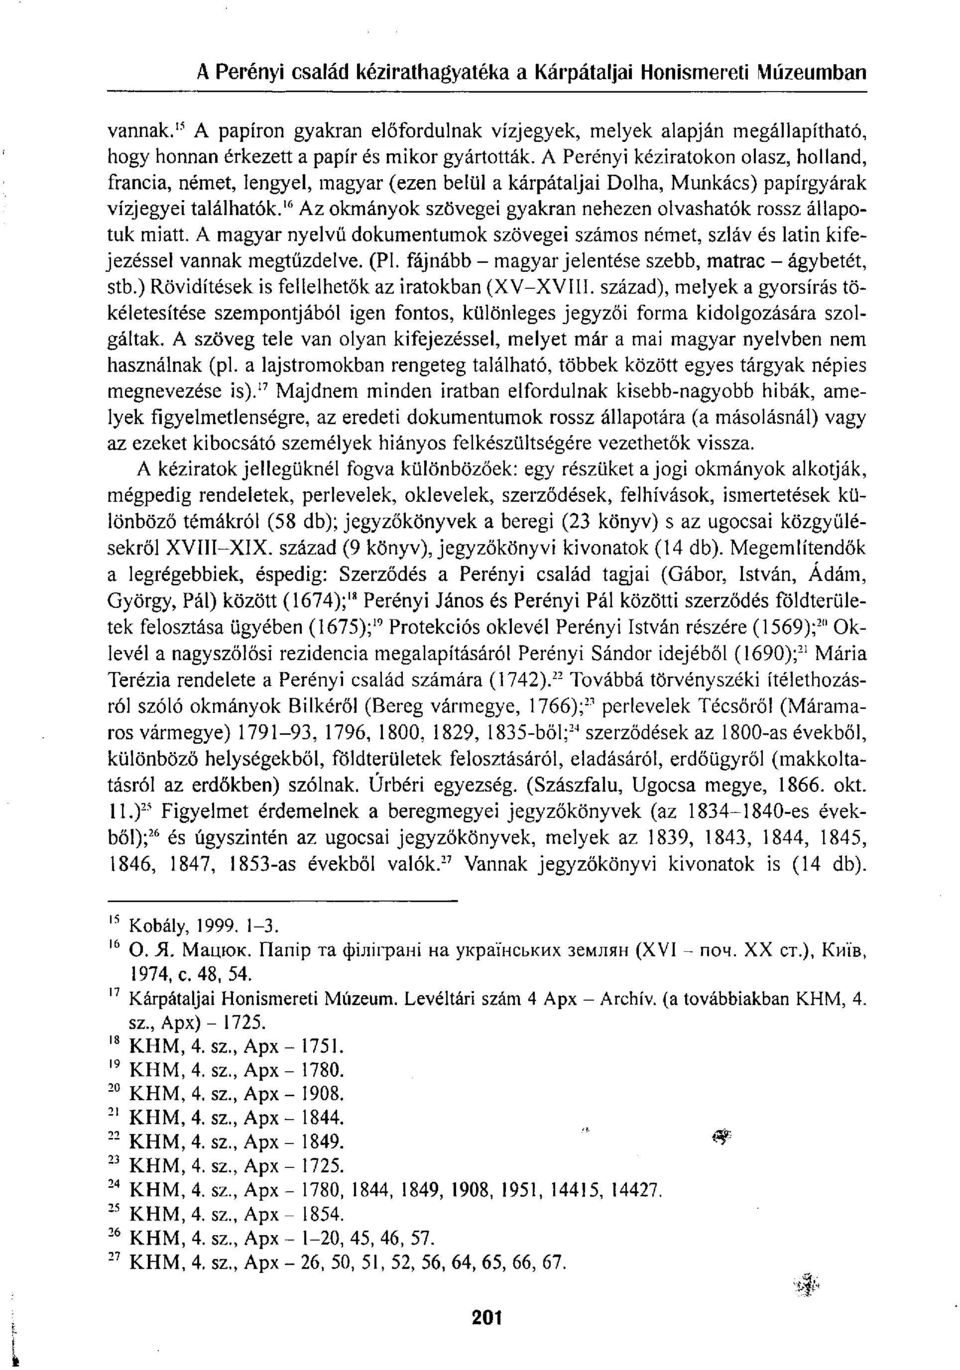 16 Az okmányok szövegei gyakran nehezen olvashatók rossz állapotuk miatt. A magyar nyelvű dokumentumok szövegei számos német, szláv és latin kifejezéssel vannak megtűzdelve. (Pl.